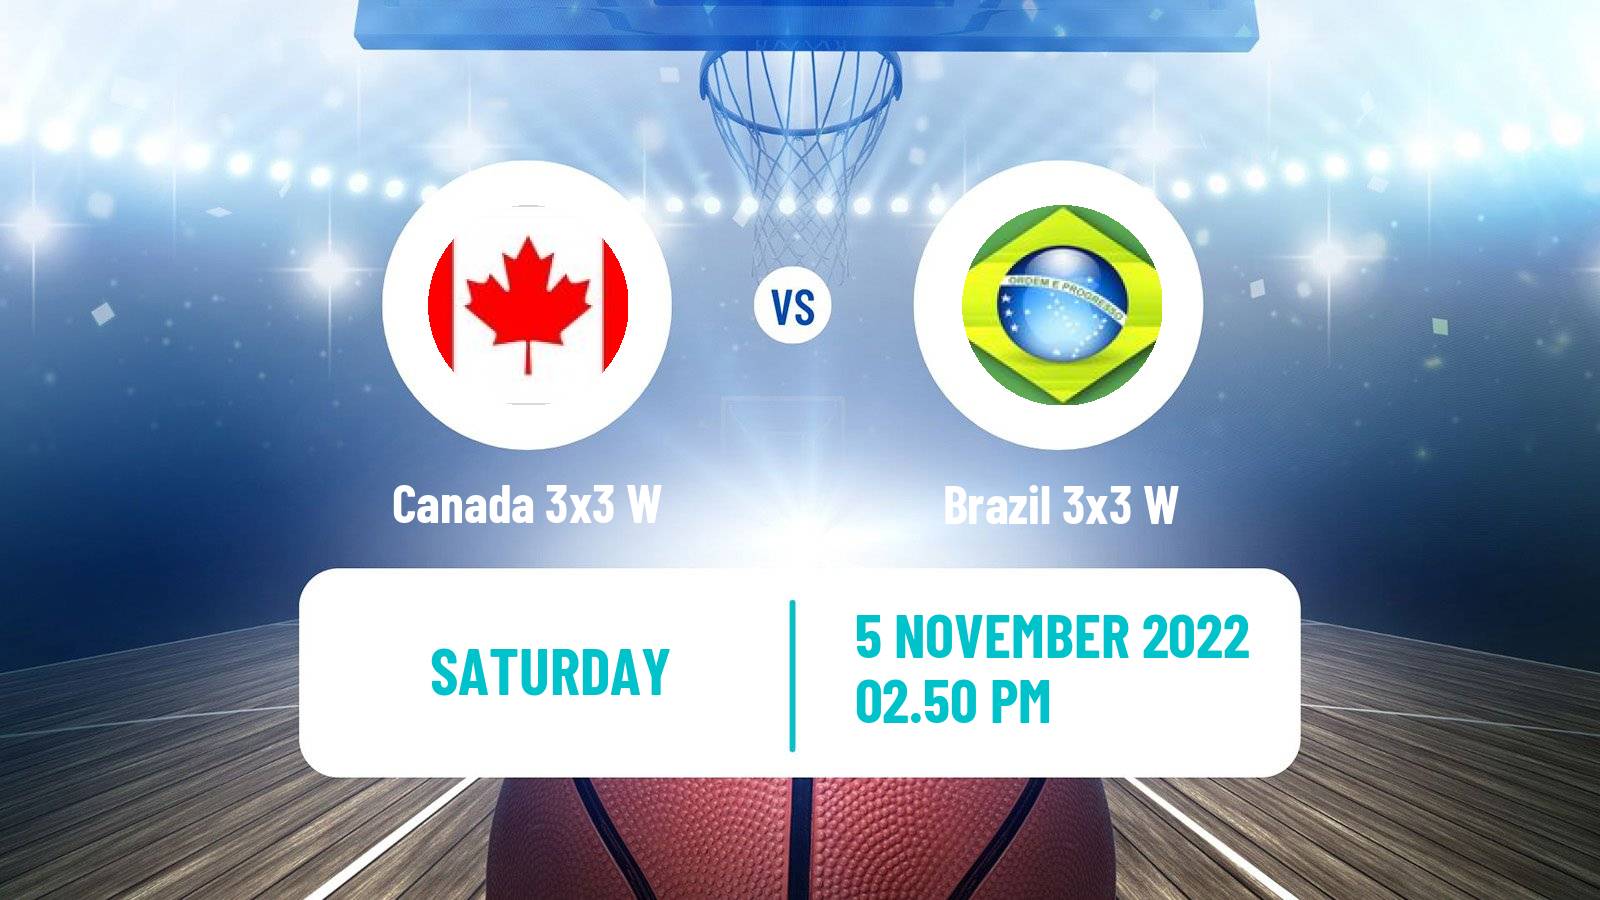 Basketball Americup 3x3 Women Canada 3x3 W - Brazil 3x3 W